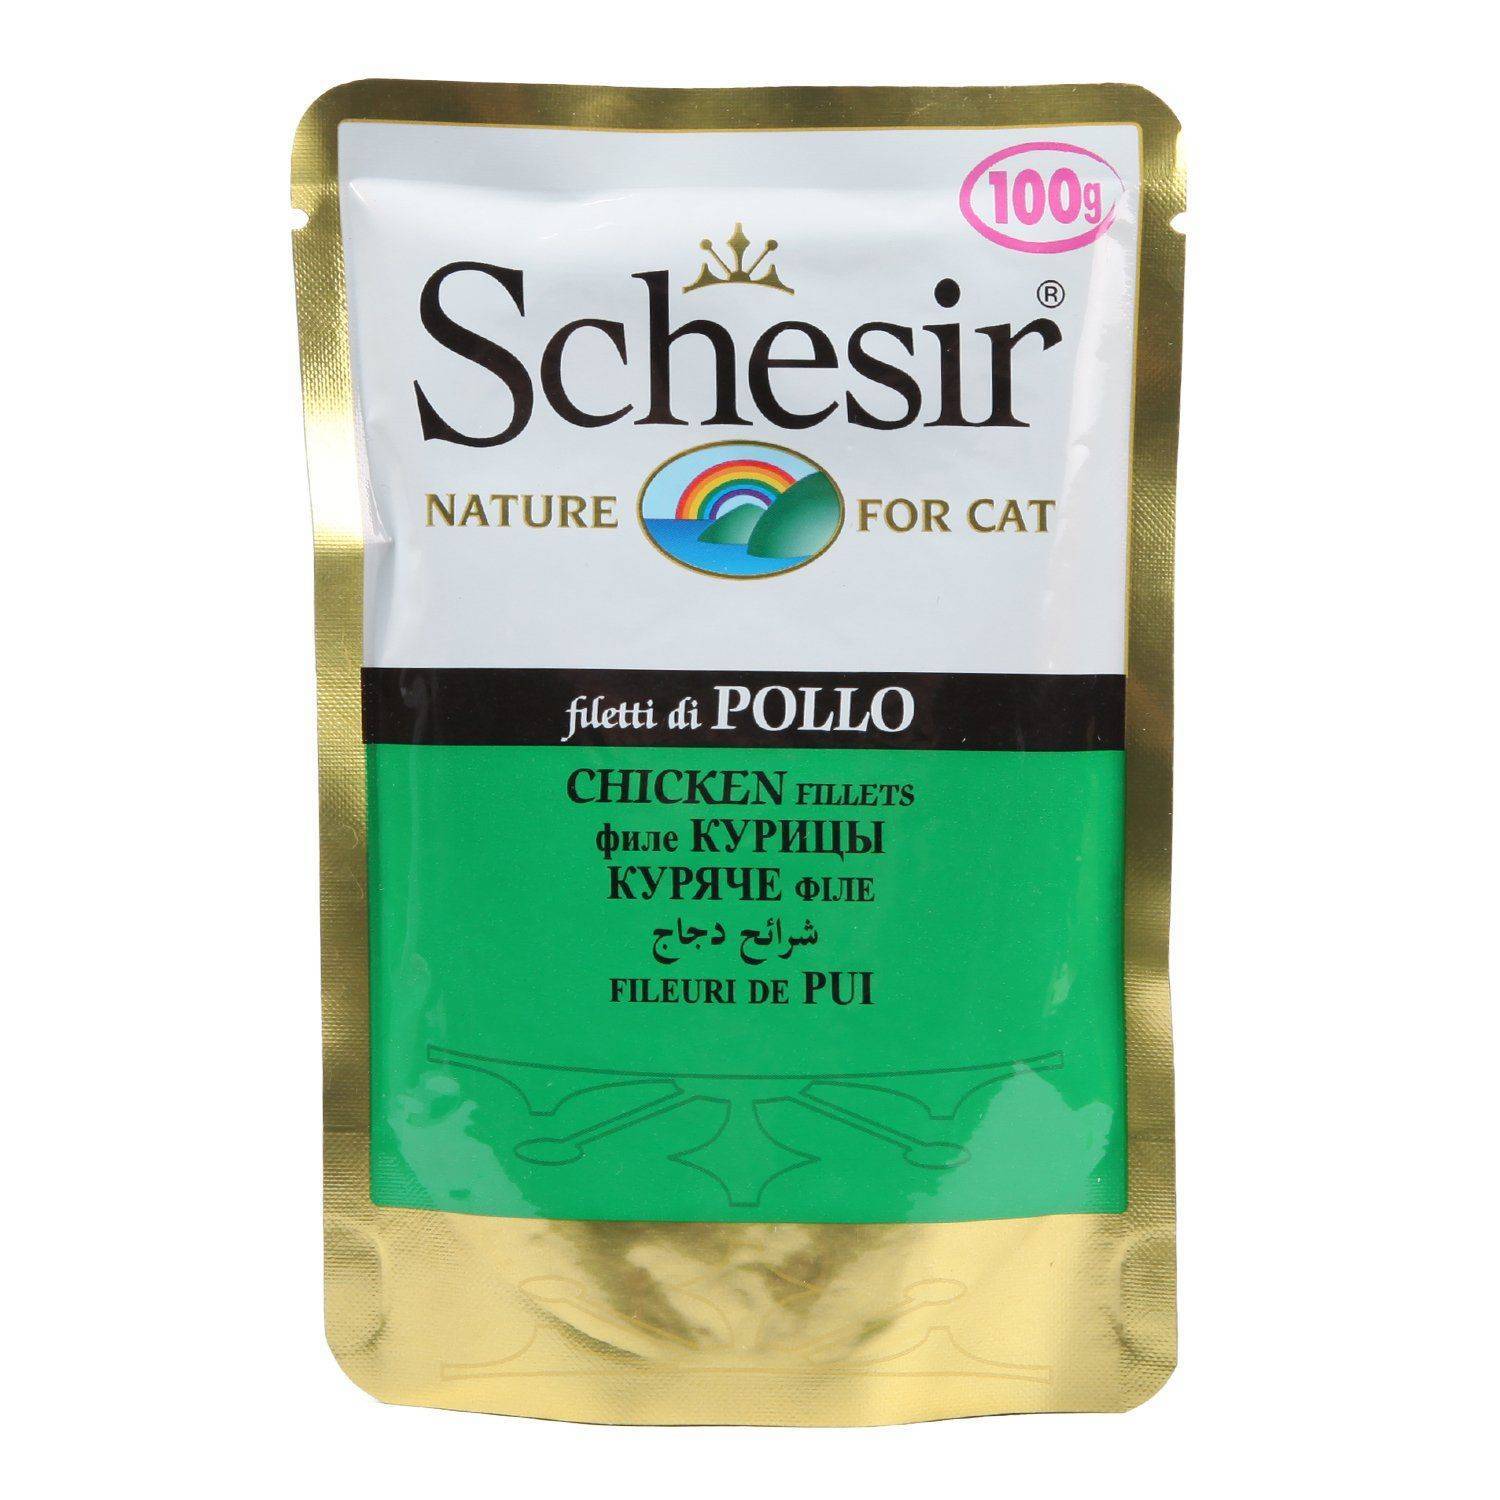 Шезир - корм для кошек: состав, плюсы и минусы